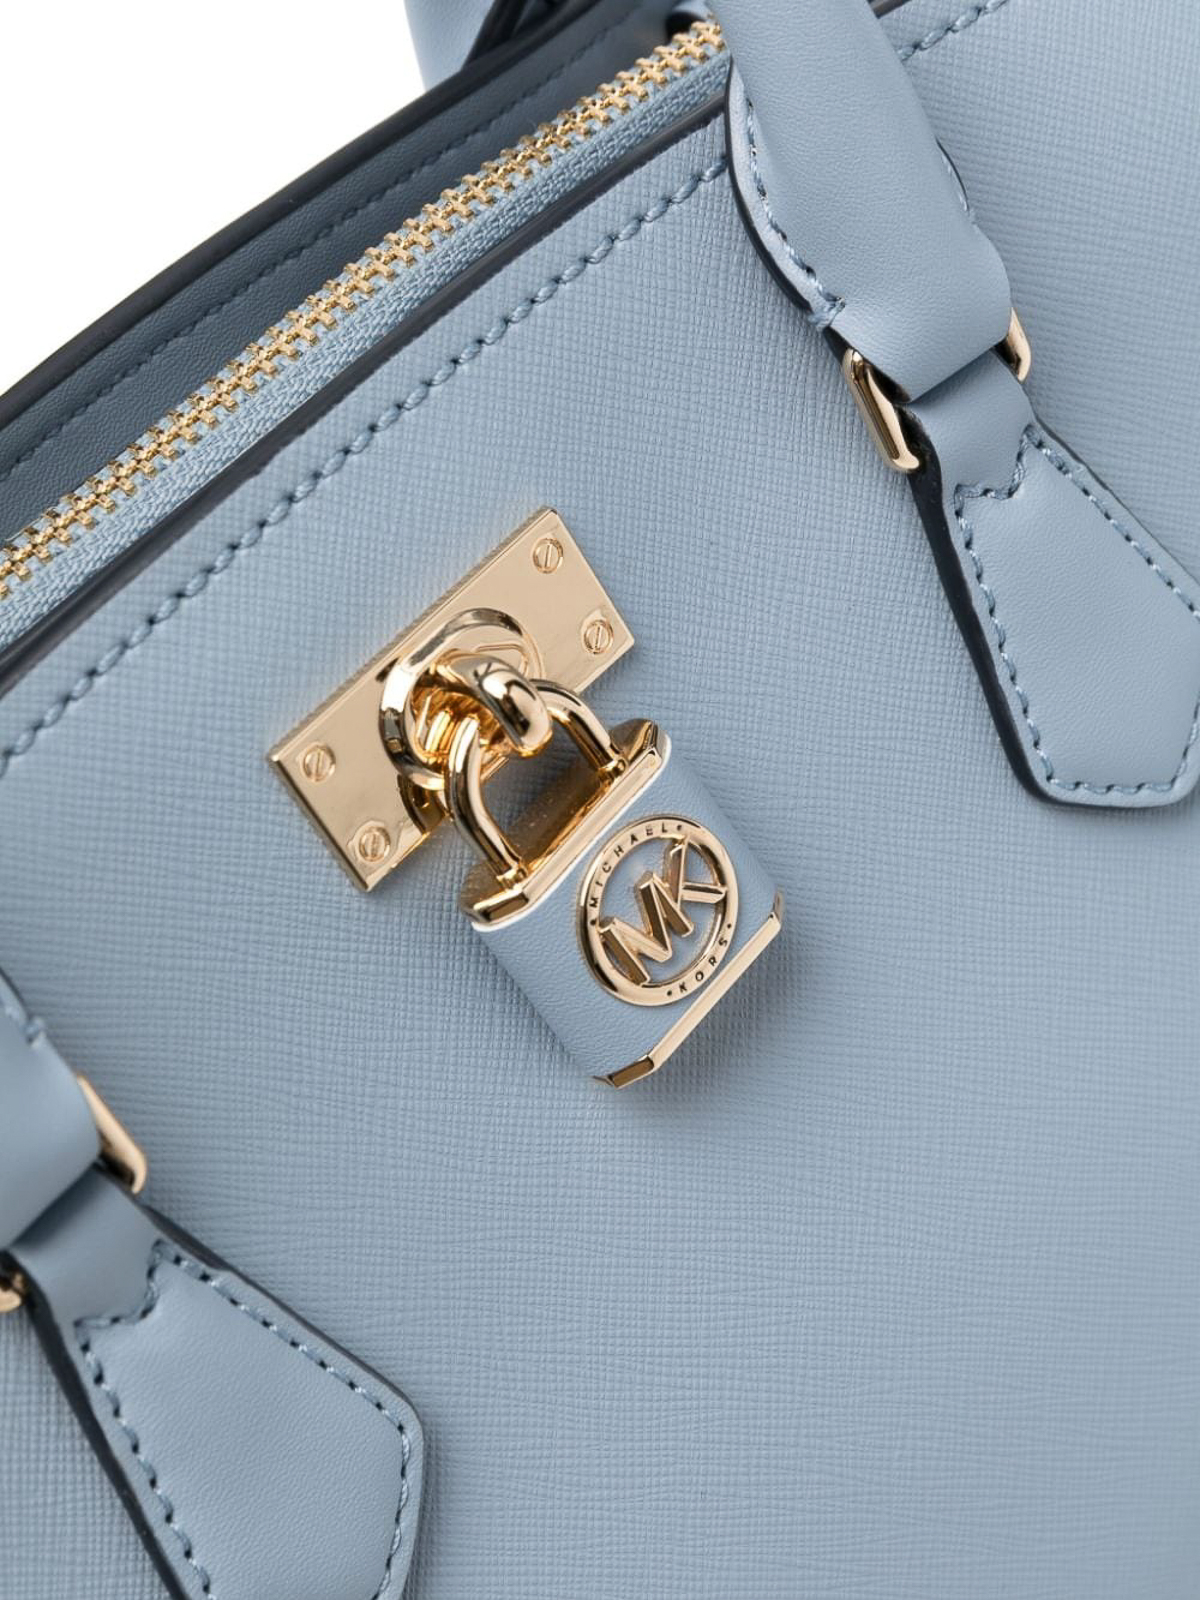 Michael Kors Brown Leather Handbagpurse & Wallet Vintage Shoulder Bag | eBay